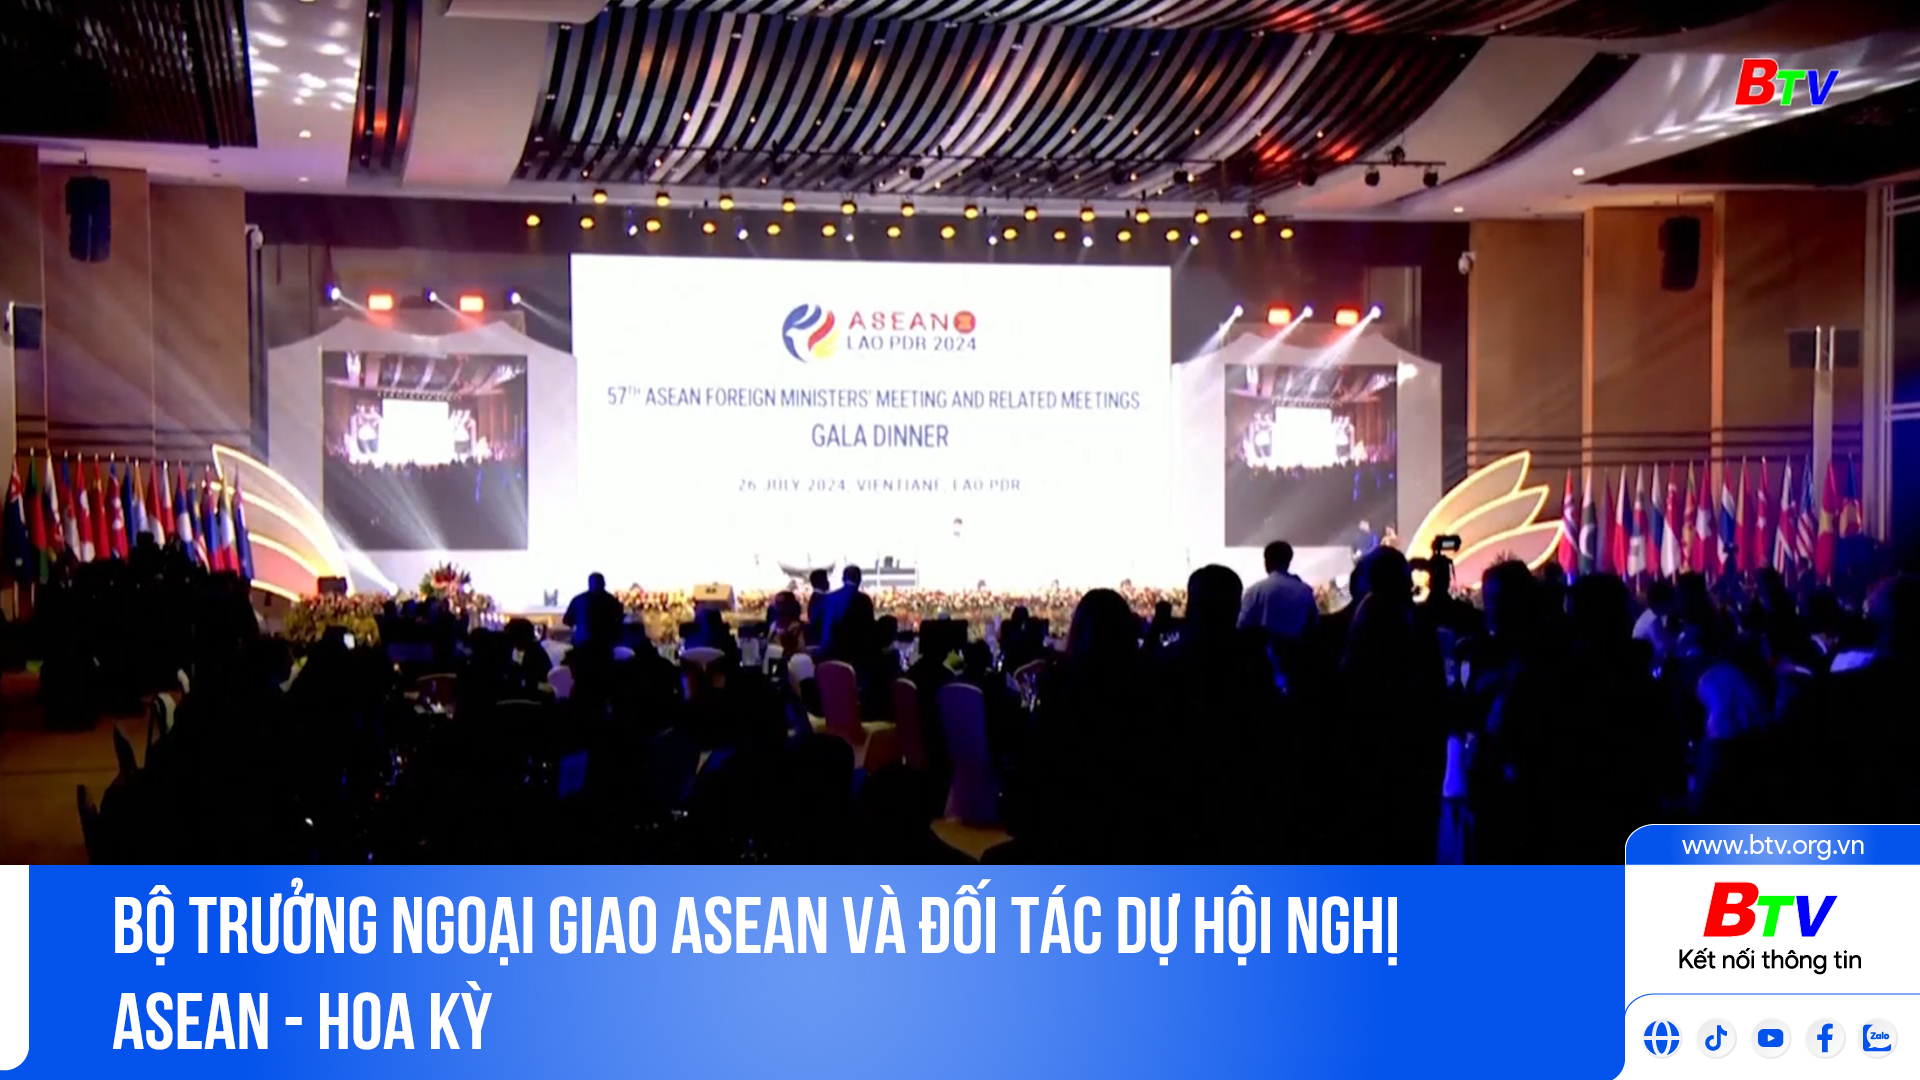 Bộ trưởng Ngoại giao ASEAN và đối tác dự hội nghị ASEAN - Hoa Kỳ